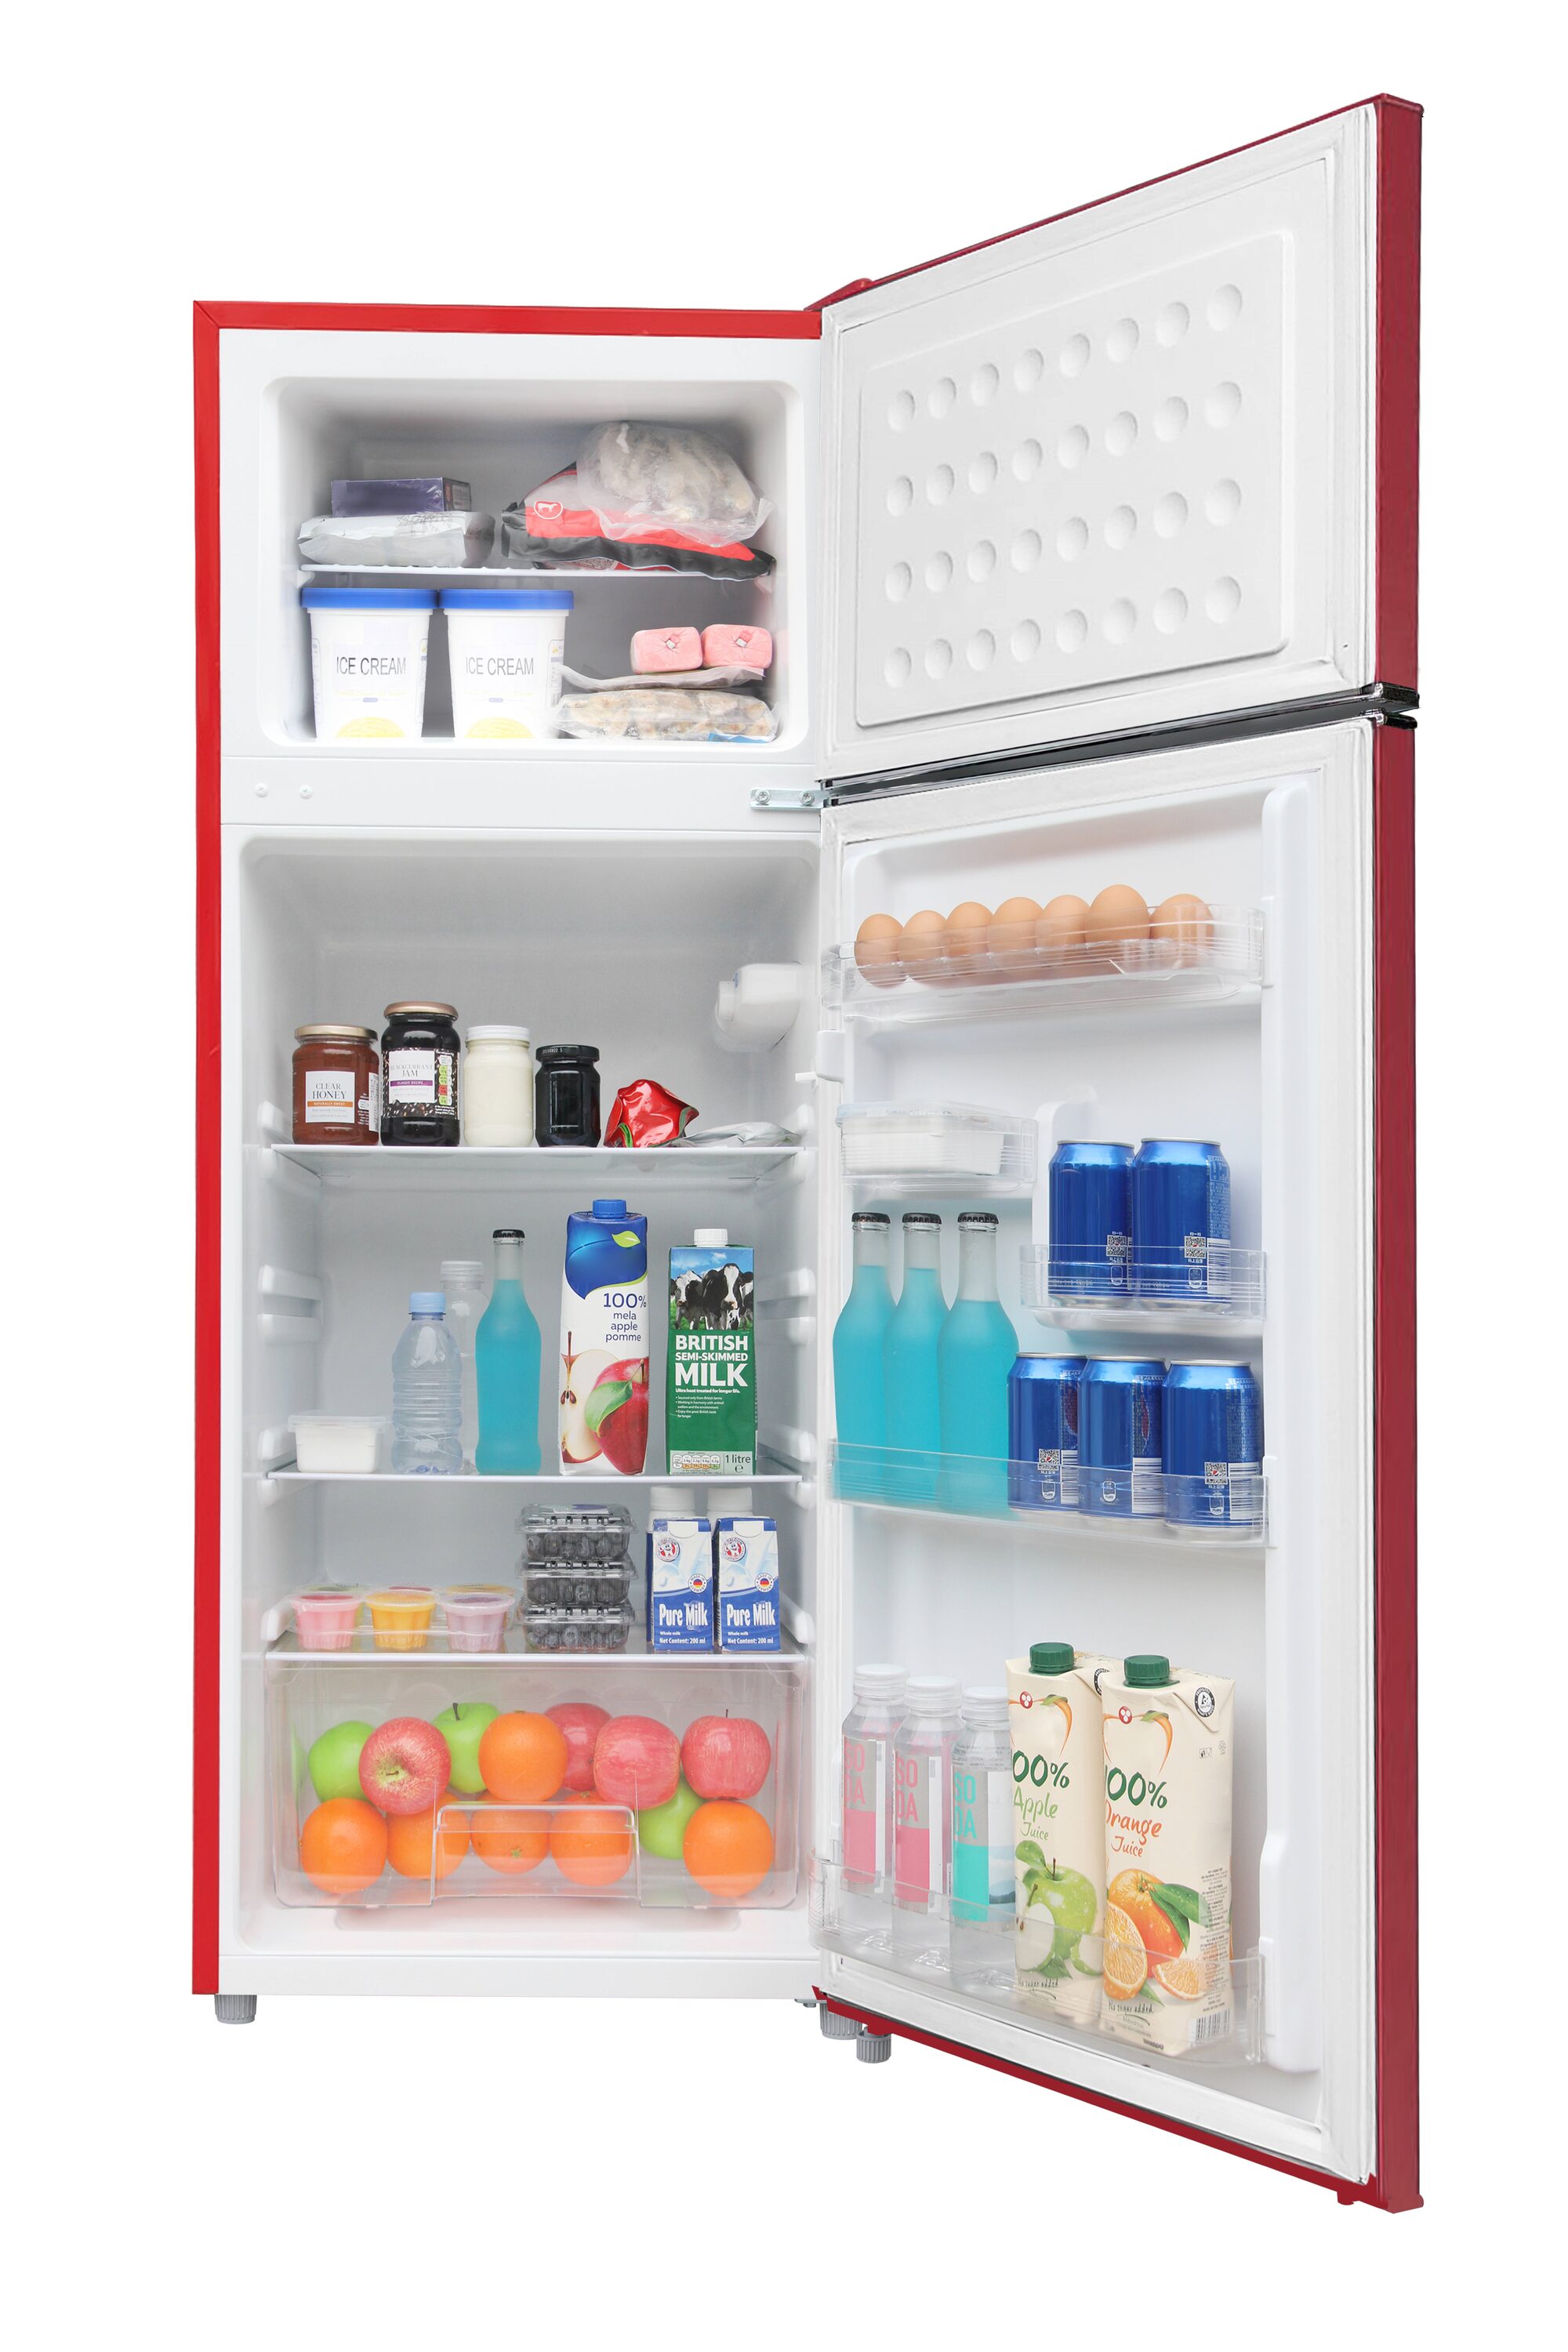  Frigidaire EFR753-Rojo, refrigerador de tamaño apartamento de 2  puertas con congelador, 7.5 pies cúbicos, retro, rojo : Electrodomésticos